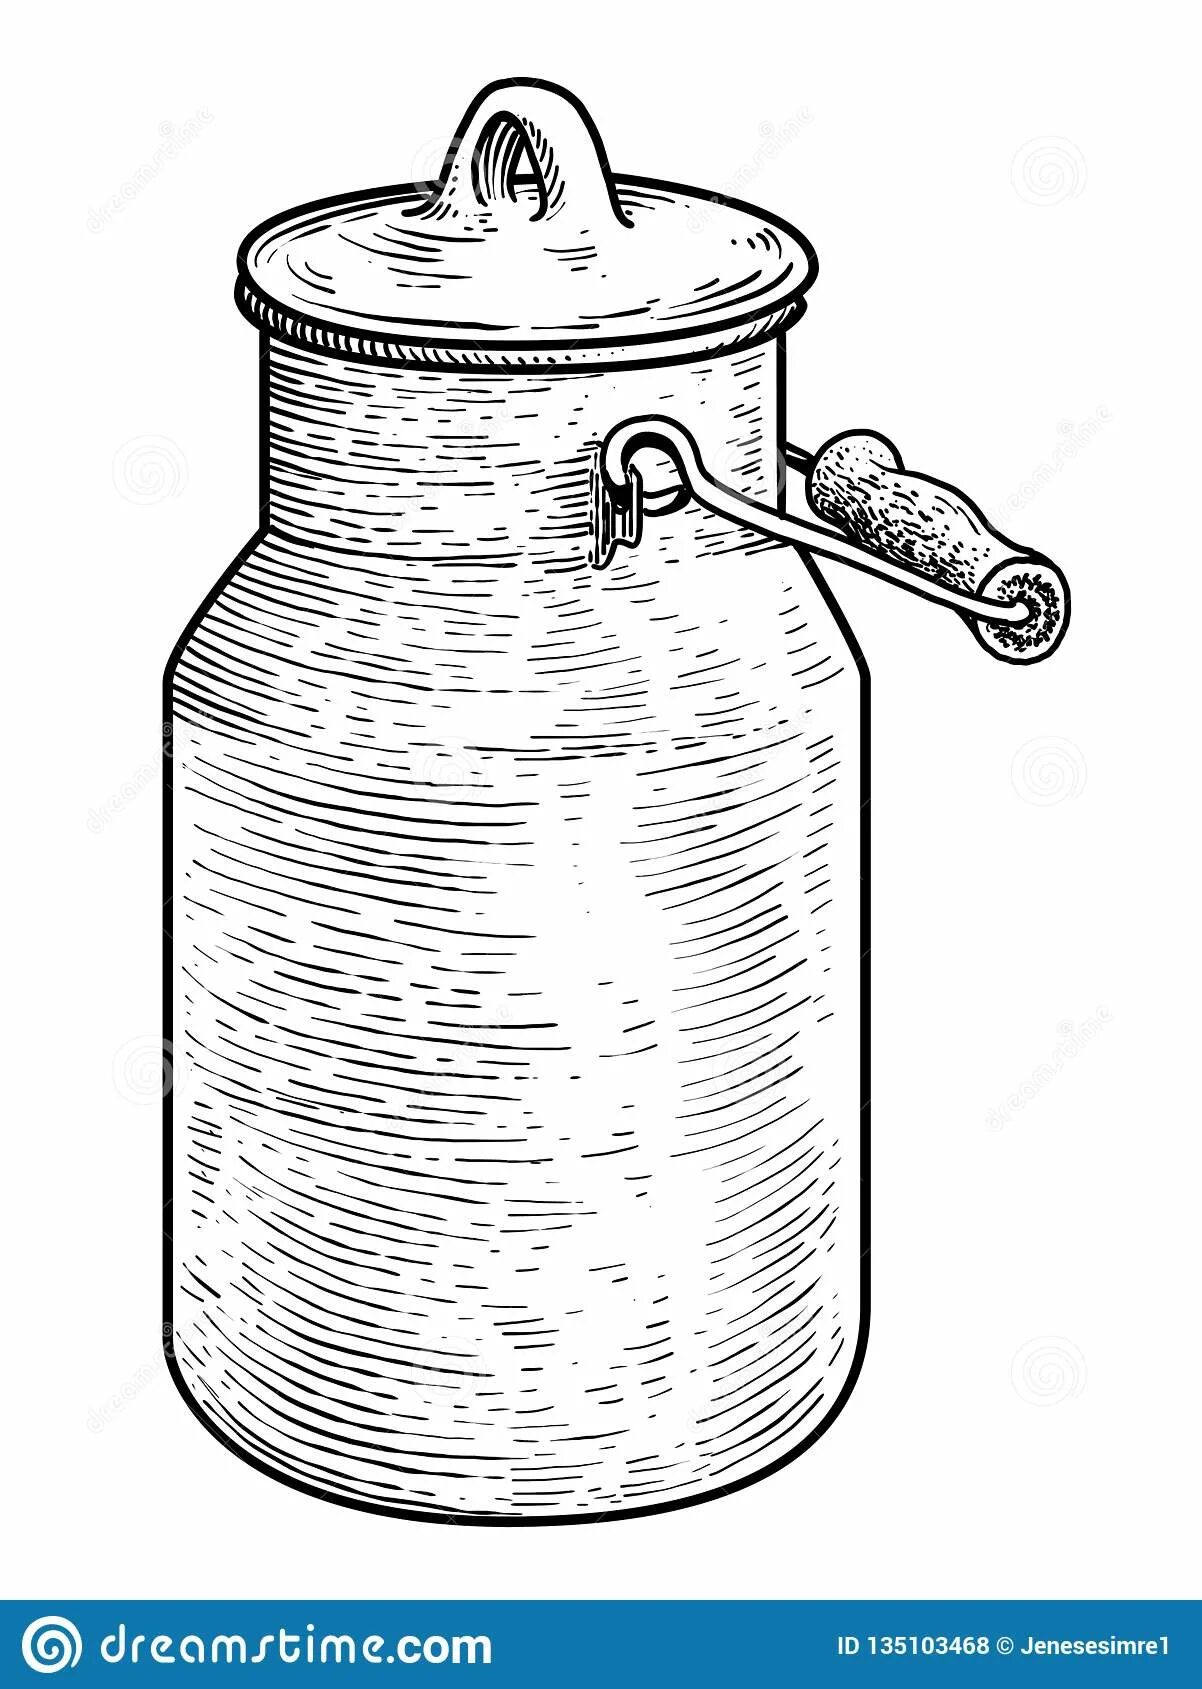 Coloring fat jar